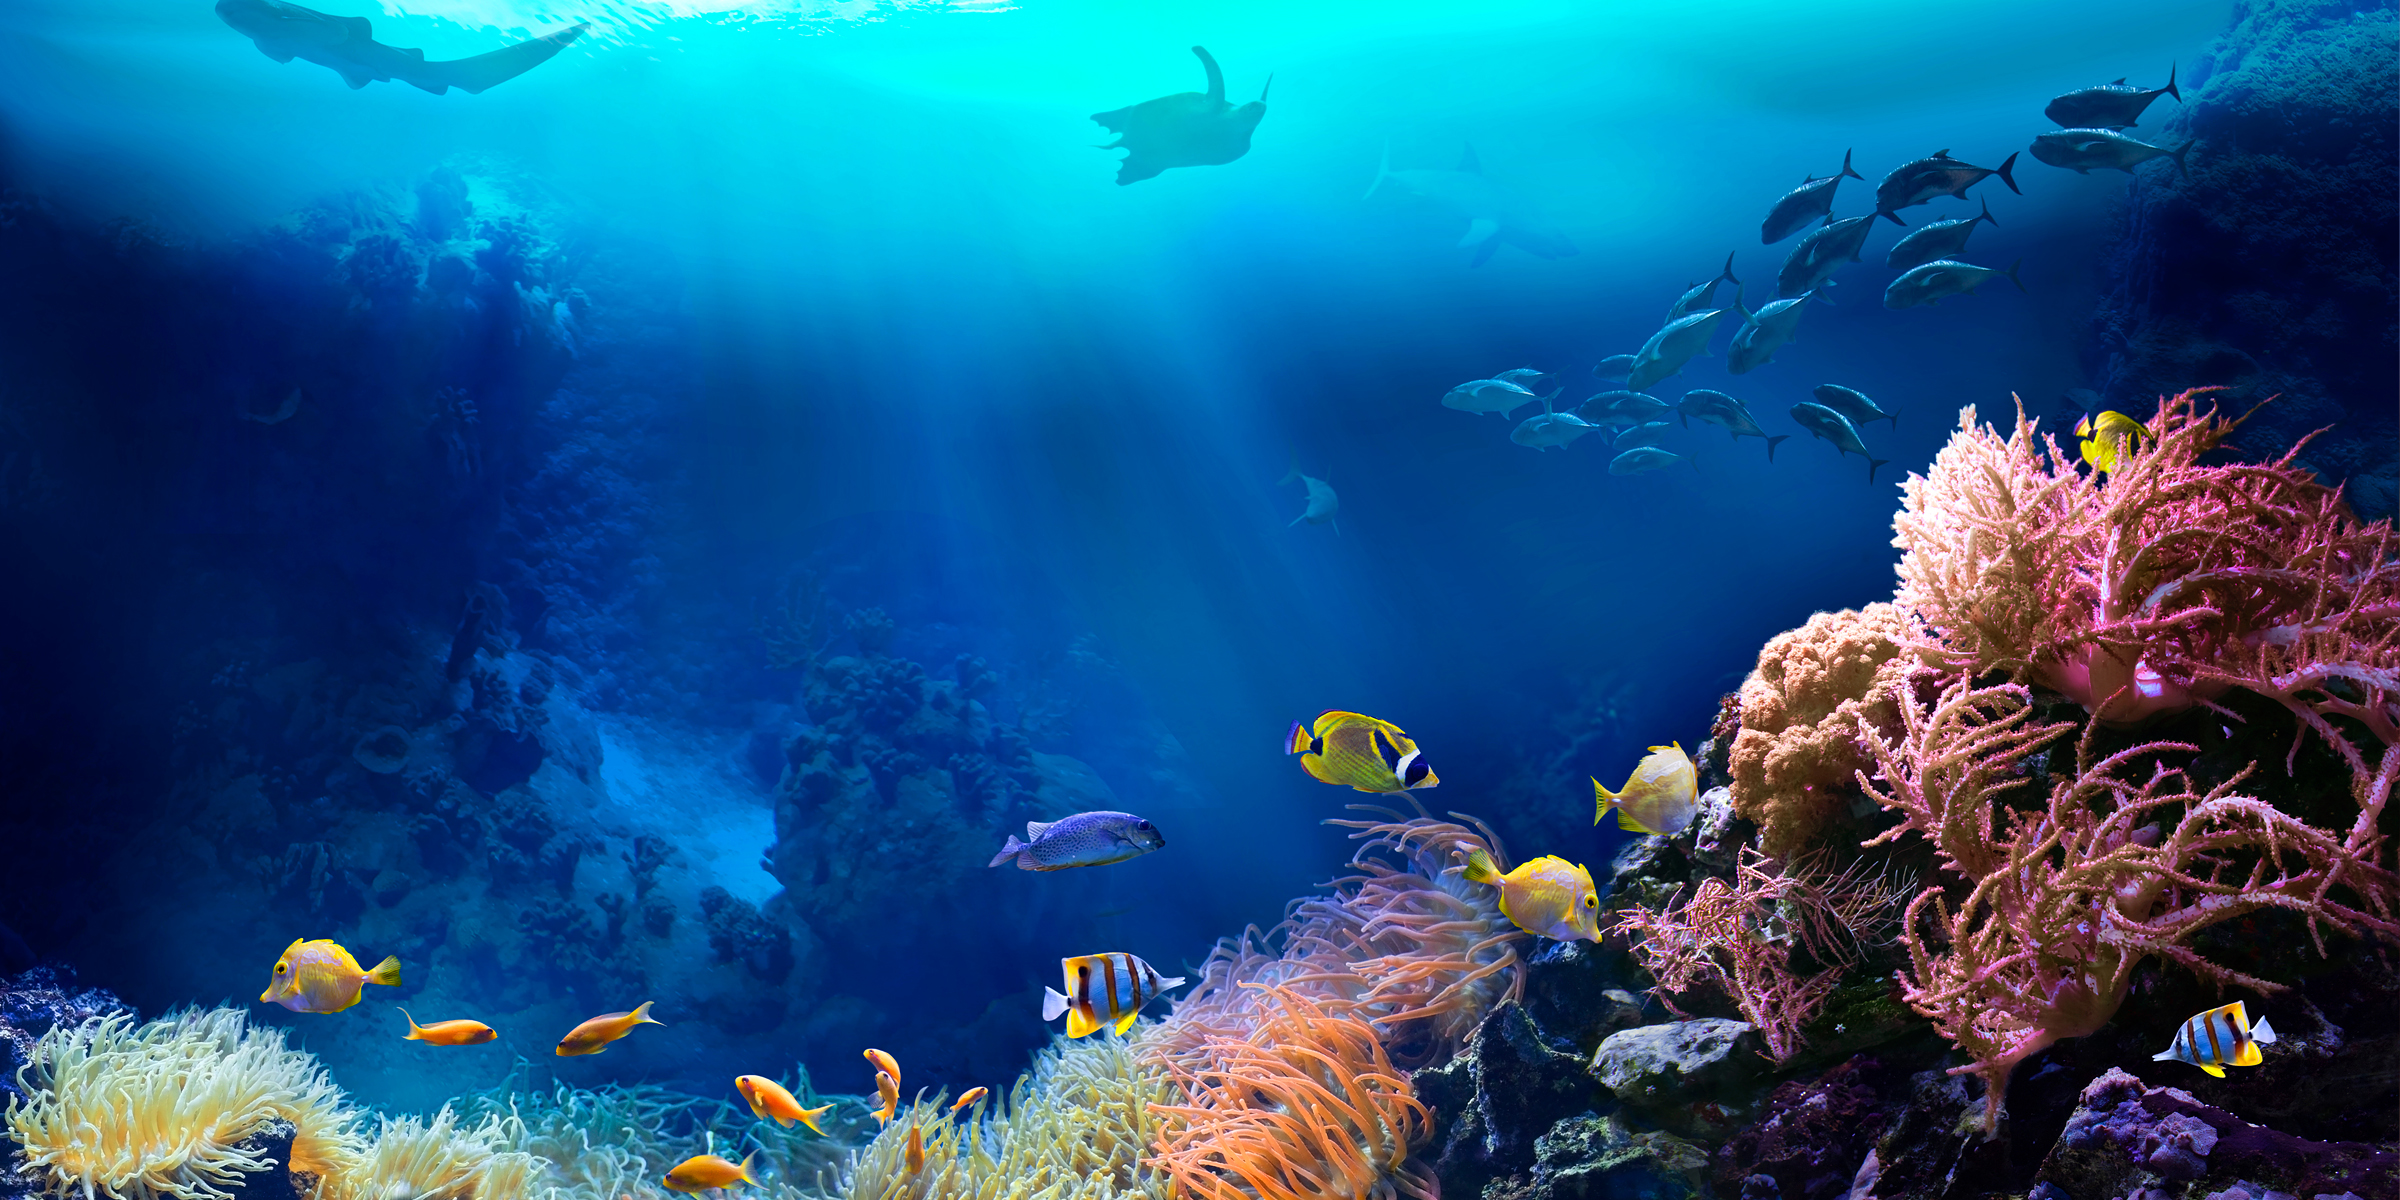 The ocean | Source: Shutterstock